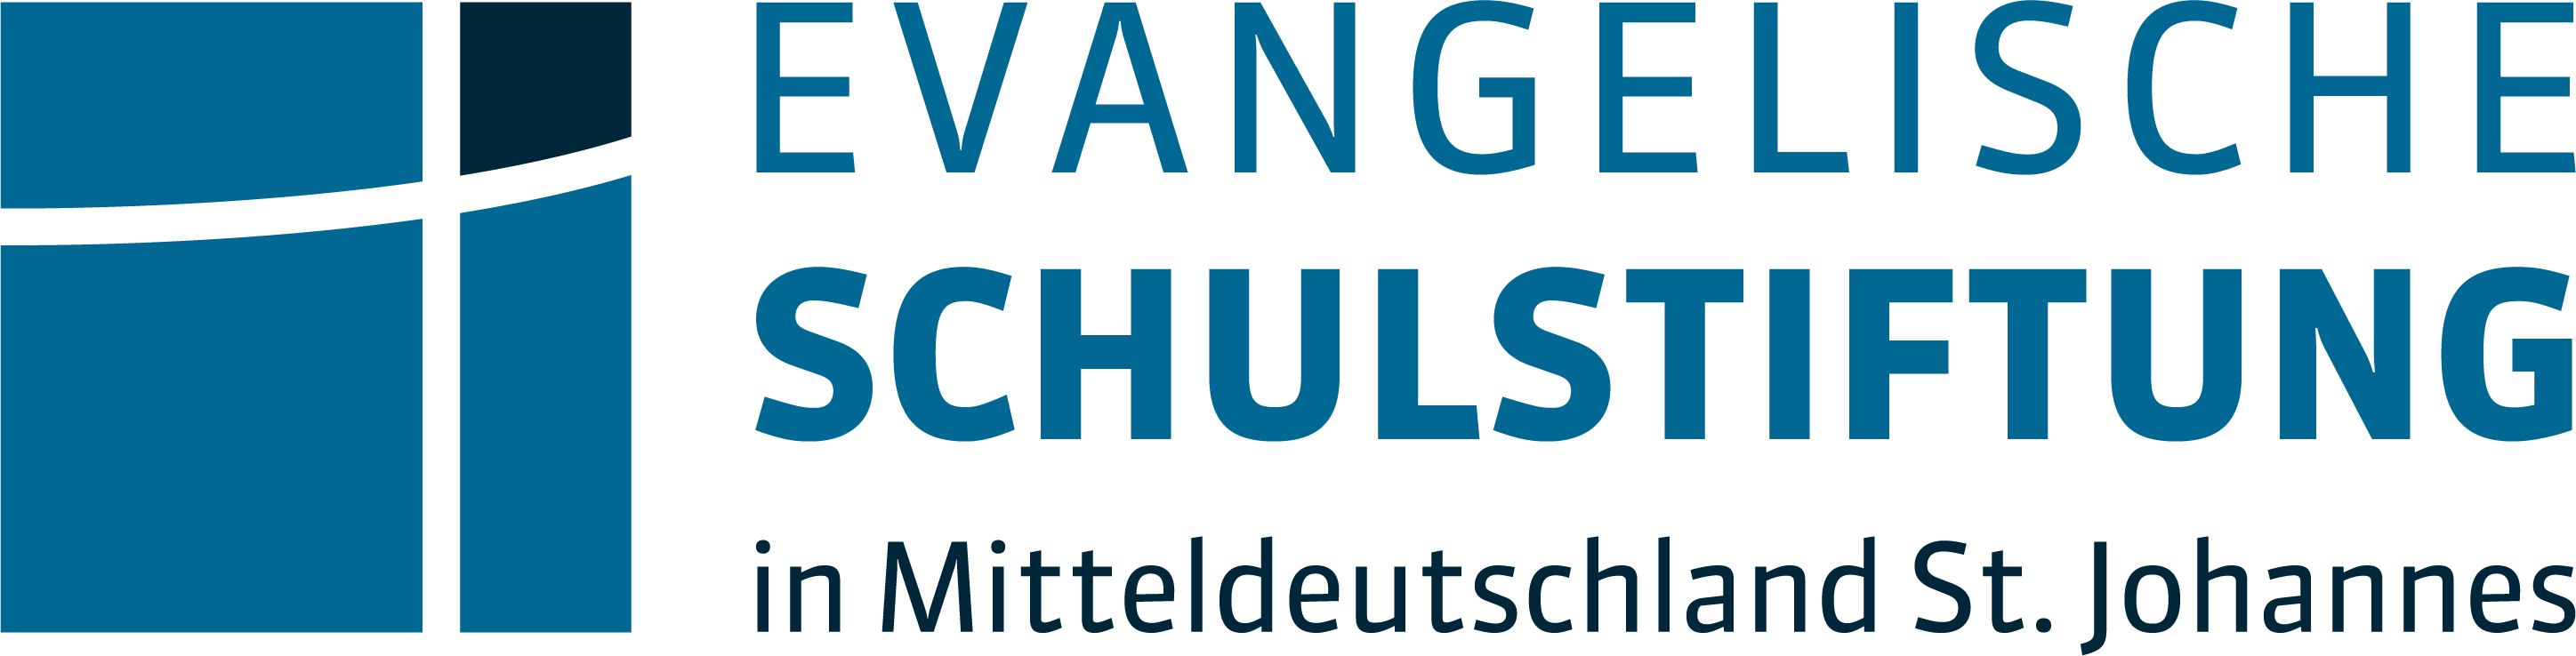 Evangelische Schulstiftung in Mitteldeutschland St. Johannes